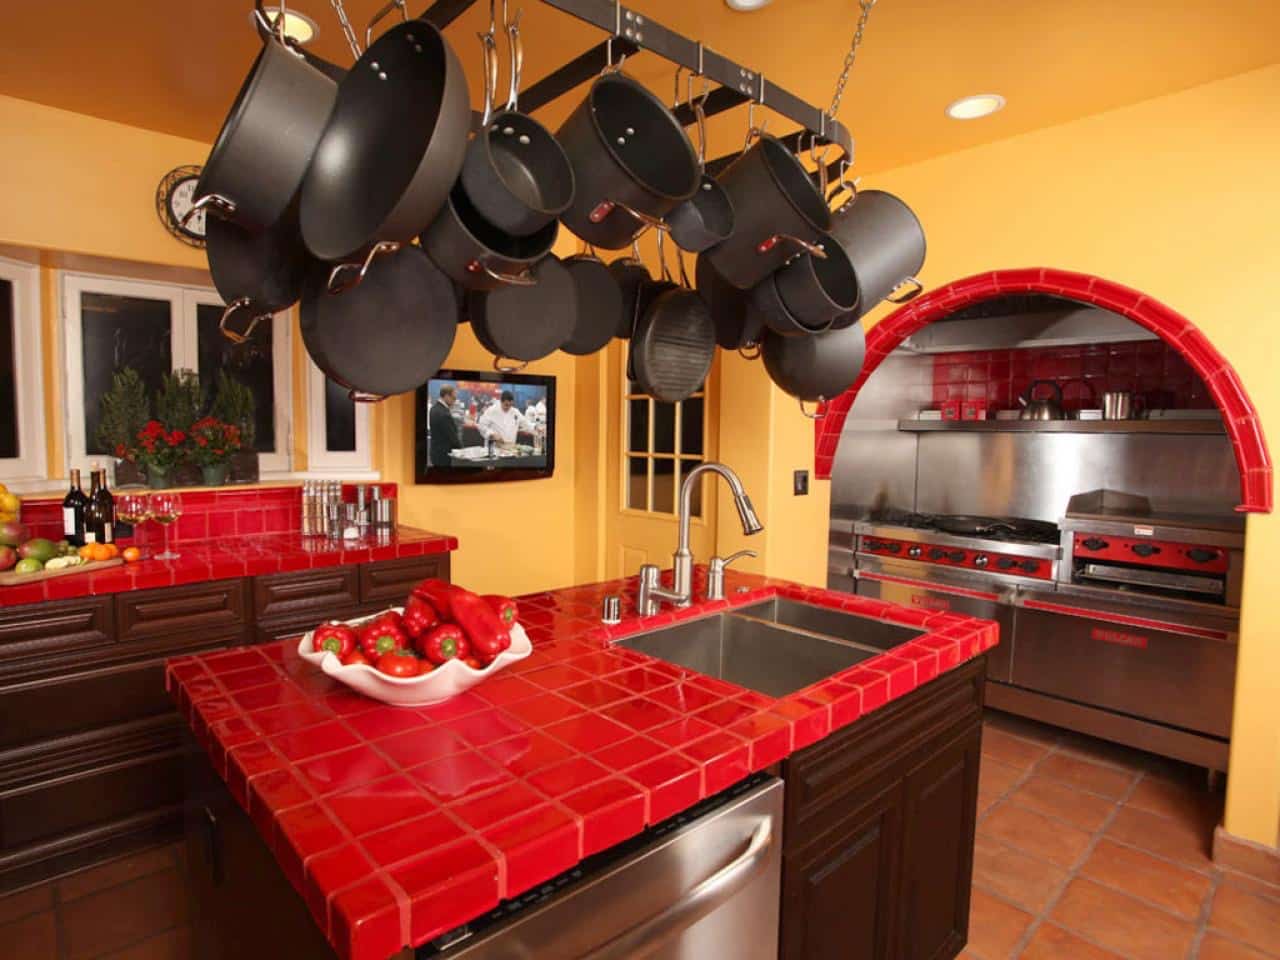  Dapur  Keramik  Merah dengan  Cat  Orange Thegorbalsla